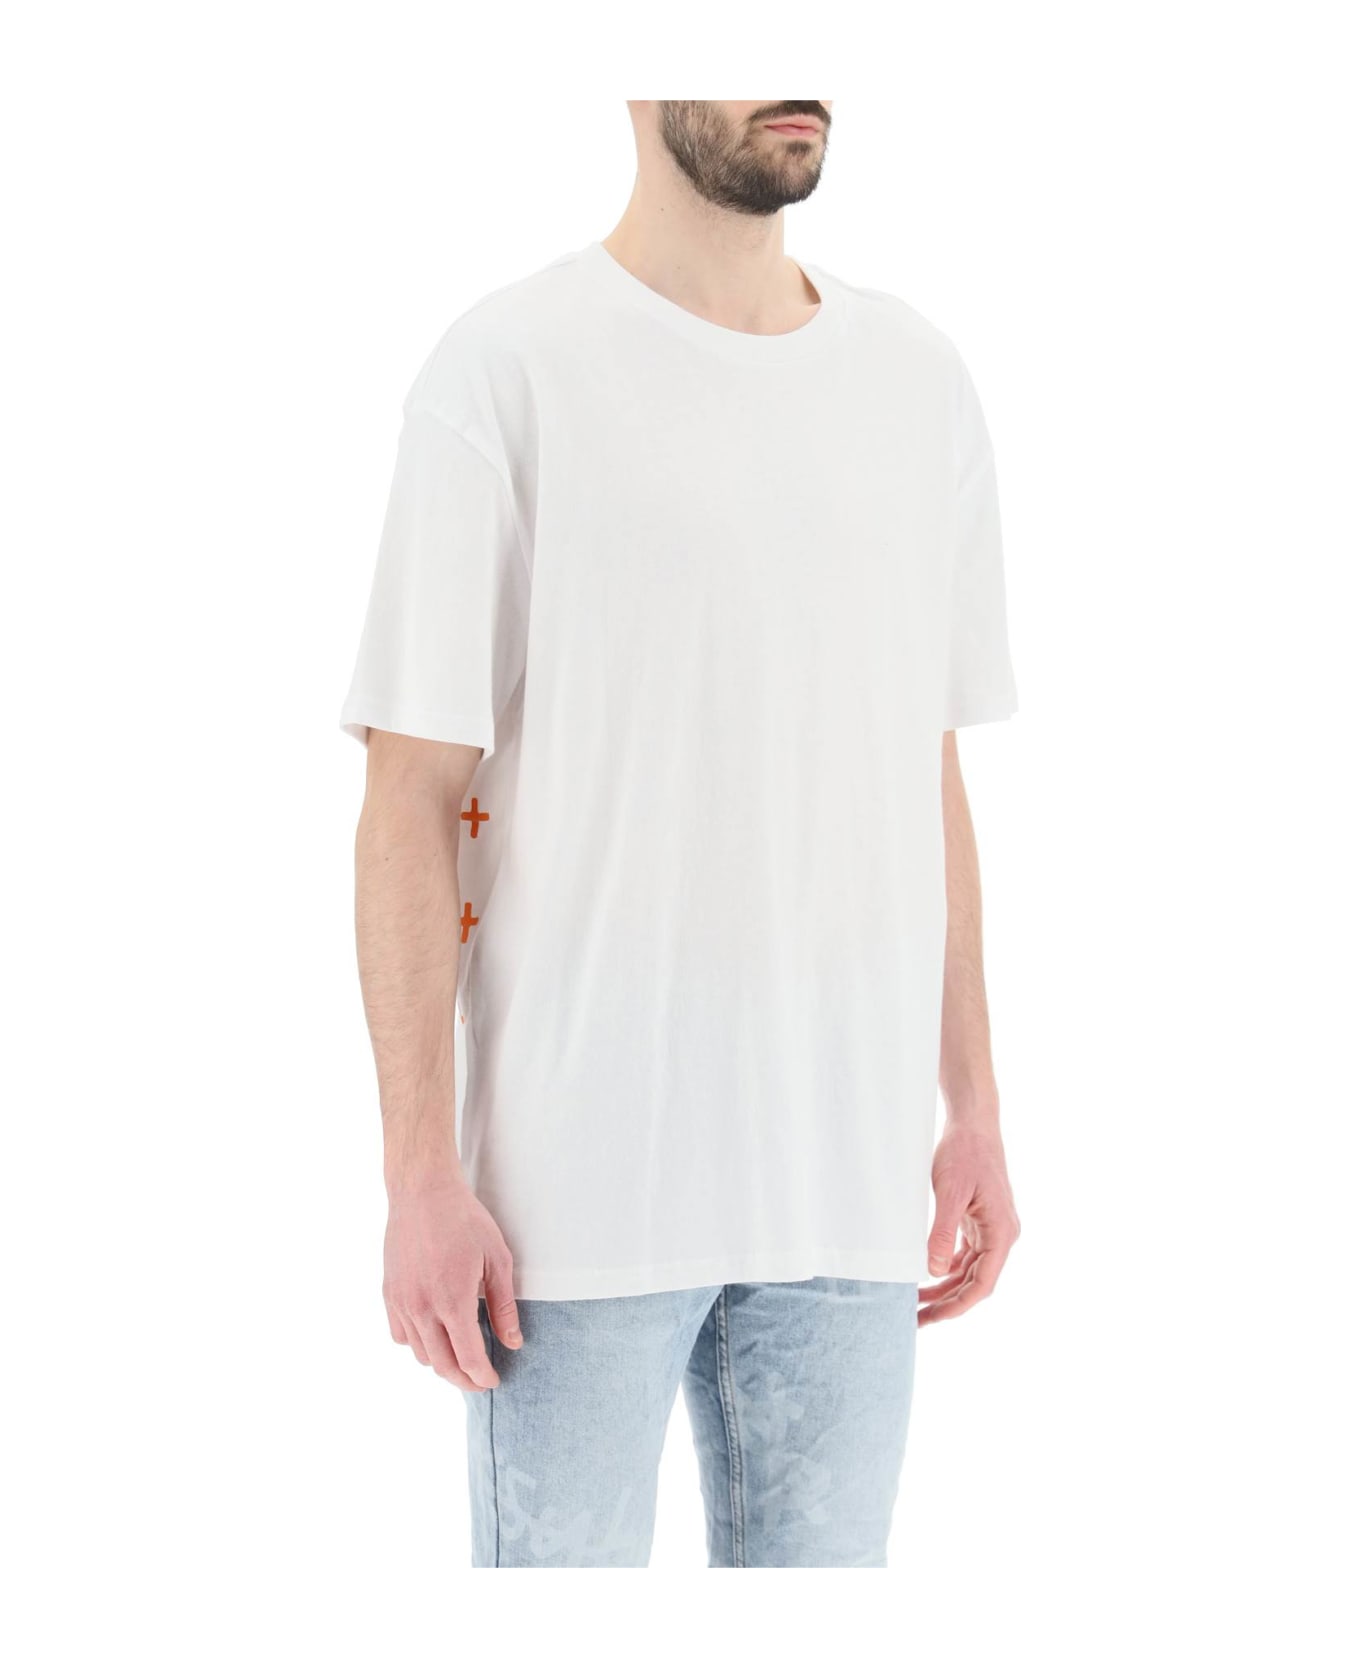 Ksubi '4 X 4 Biggie' T-shirt - WHITE (White)